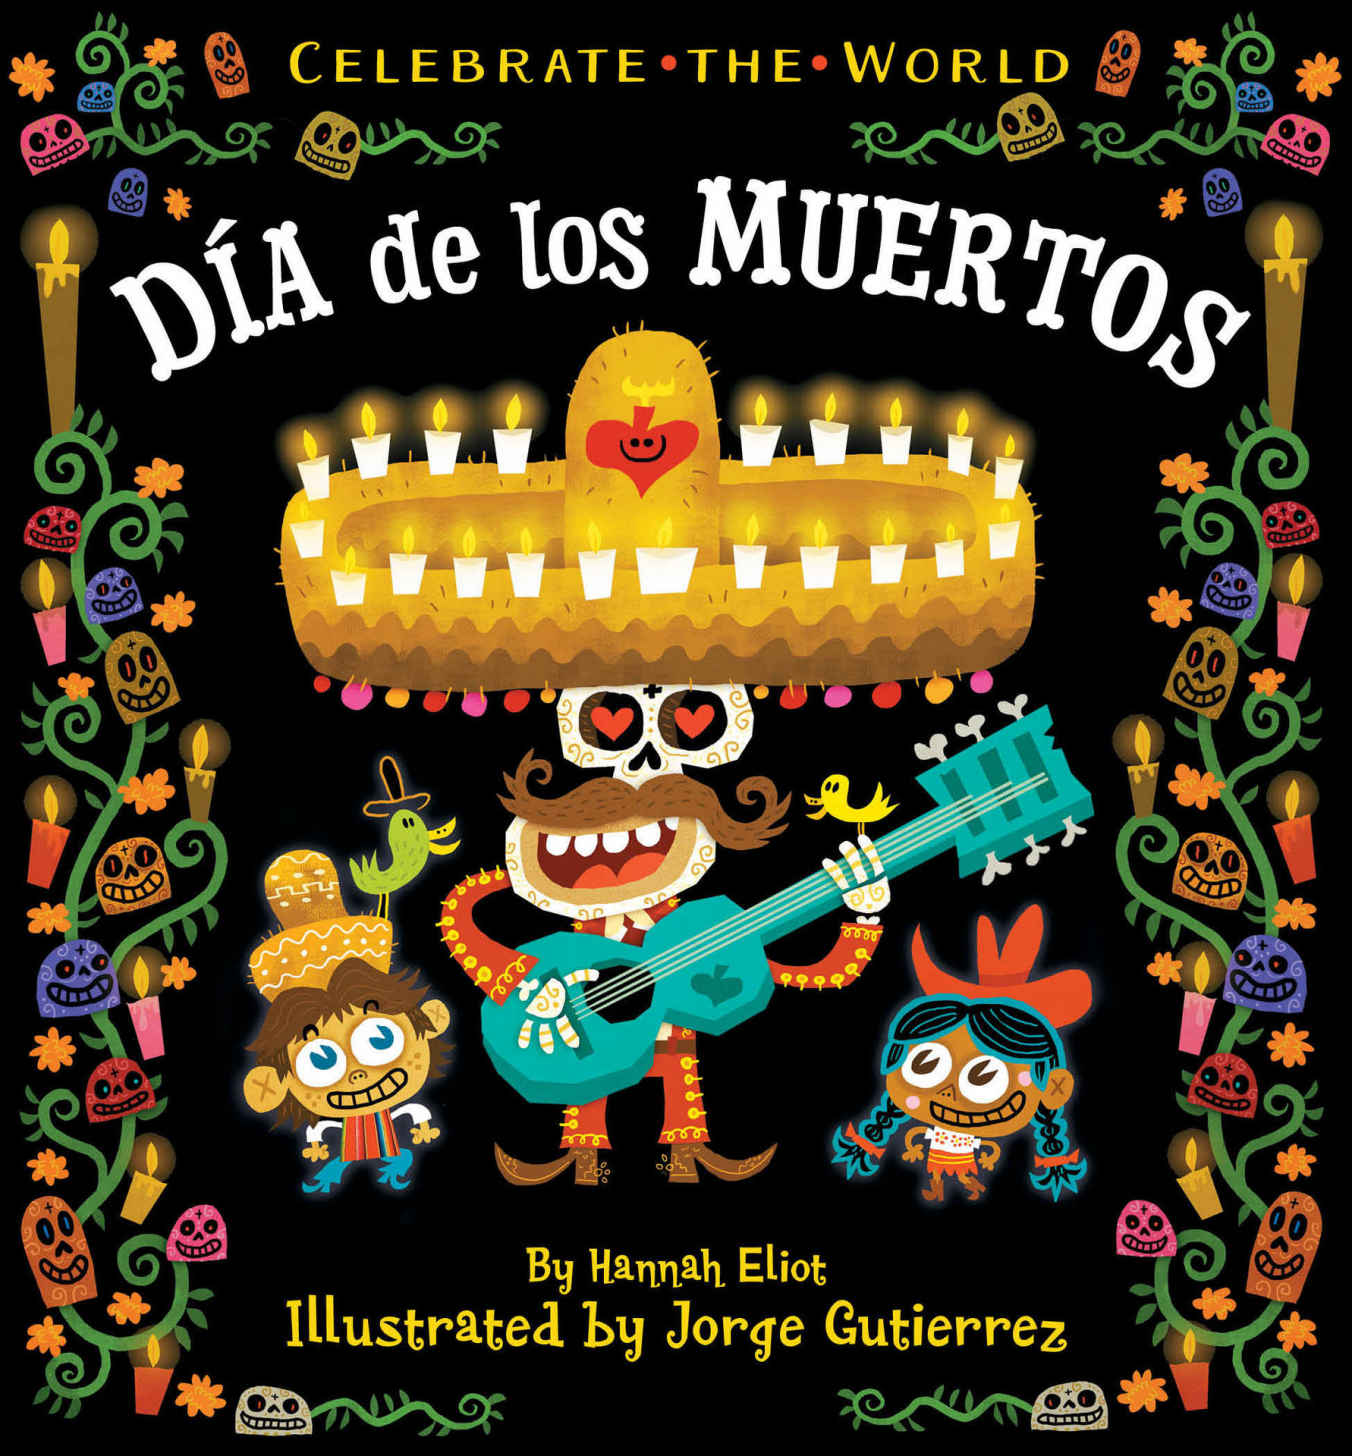 Dia de los muertos, board book, dia de los muertos board book, Hannah eliot, Jorge Gutierrez, childrens book, kidlit